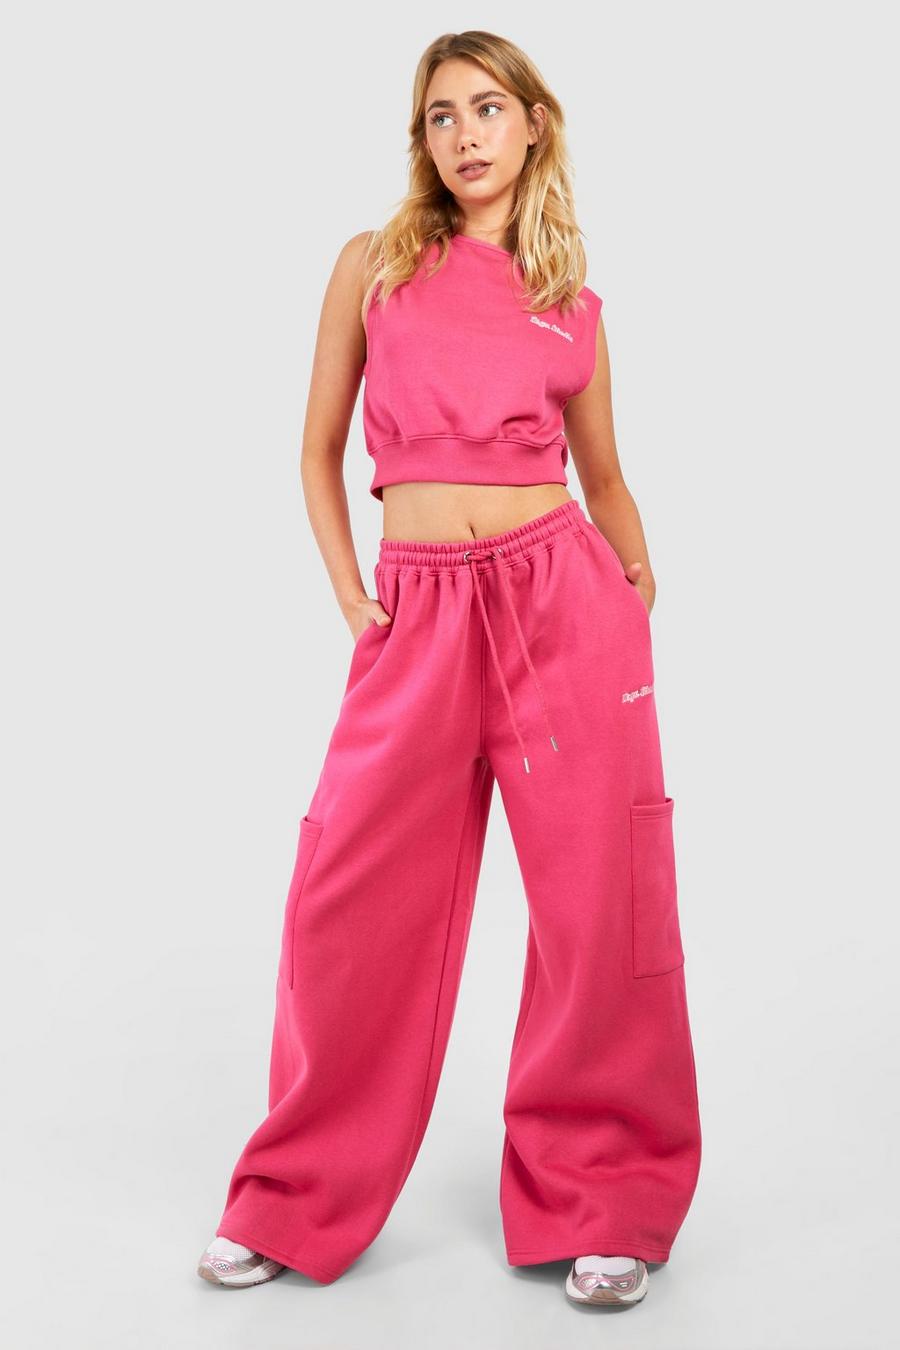 Pantalón deportivo con bolsillos cargo y firma Dsgn Studio, Hot pink image number 1